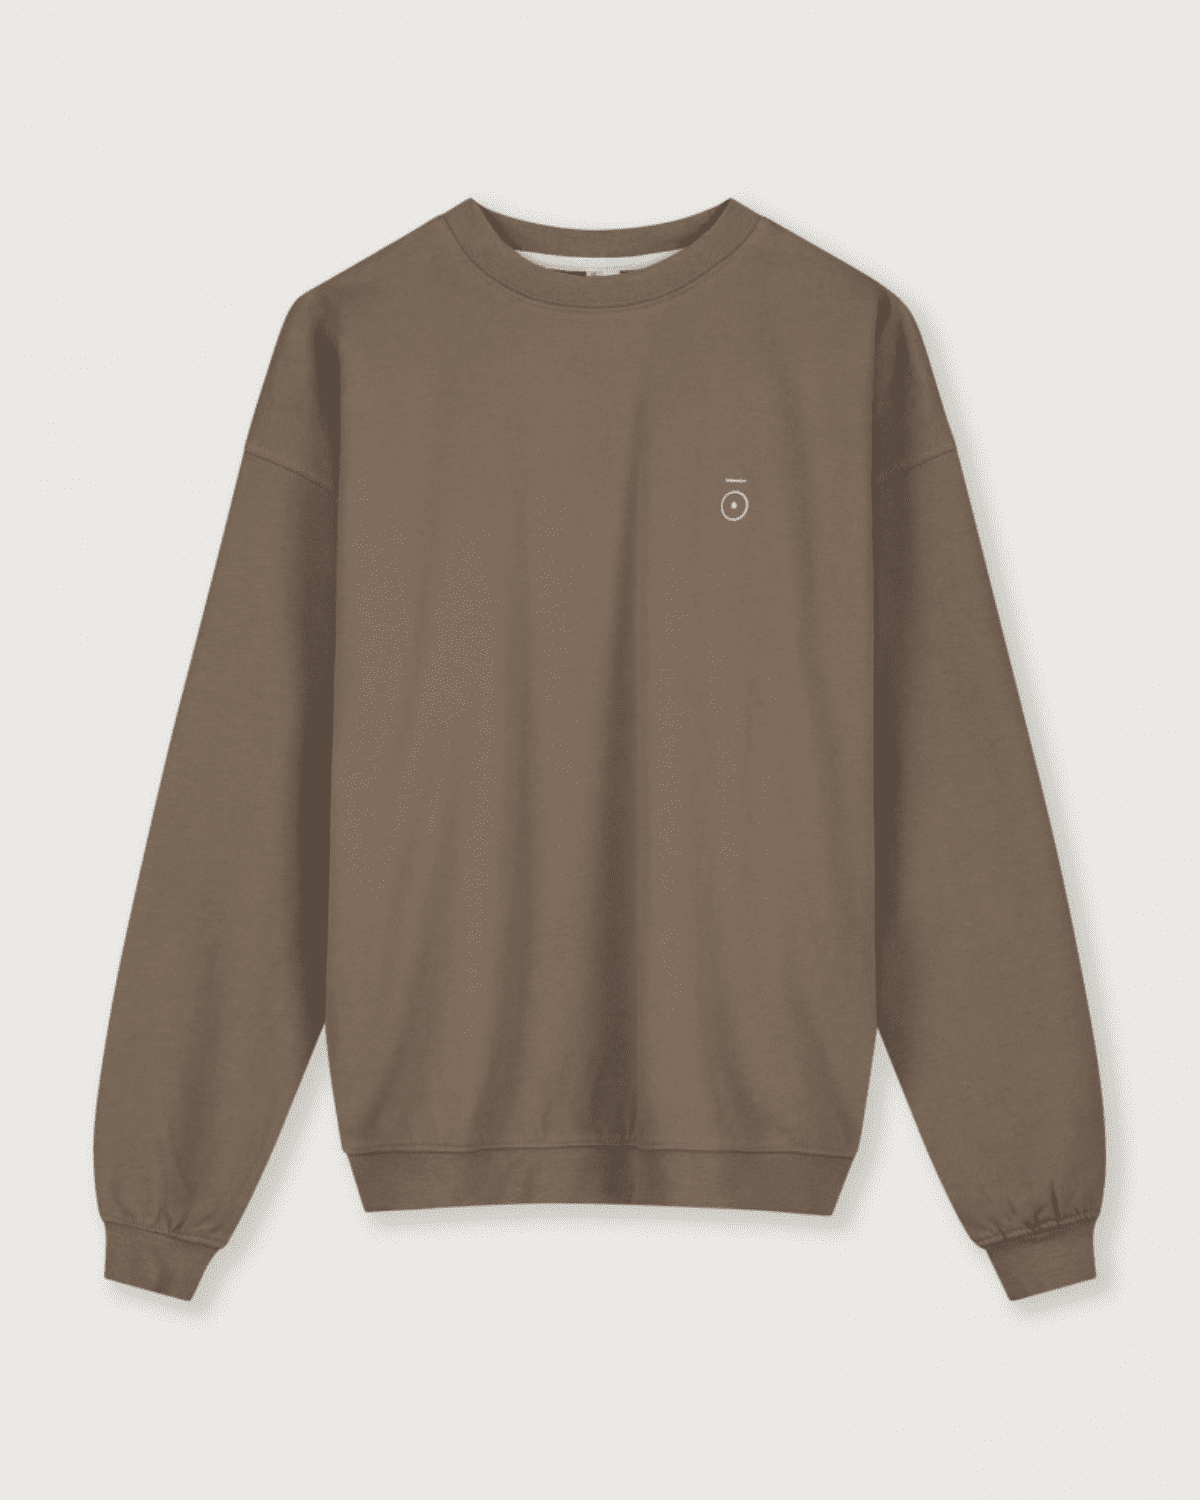 Dropped Shoulder Sweater Gray Label -   OAT & OCHRE